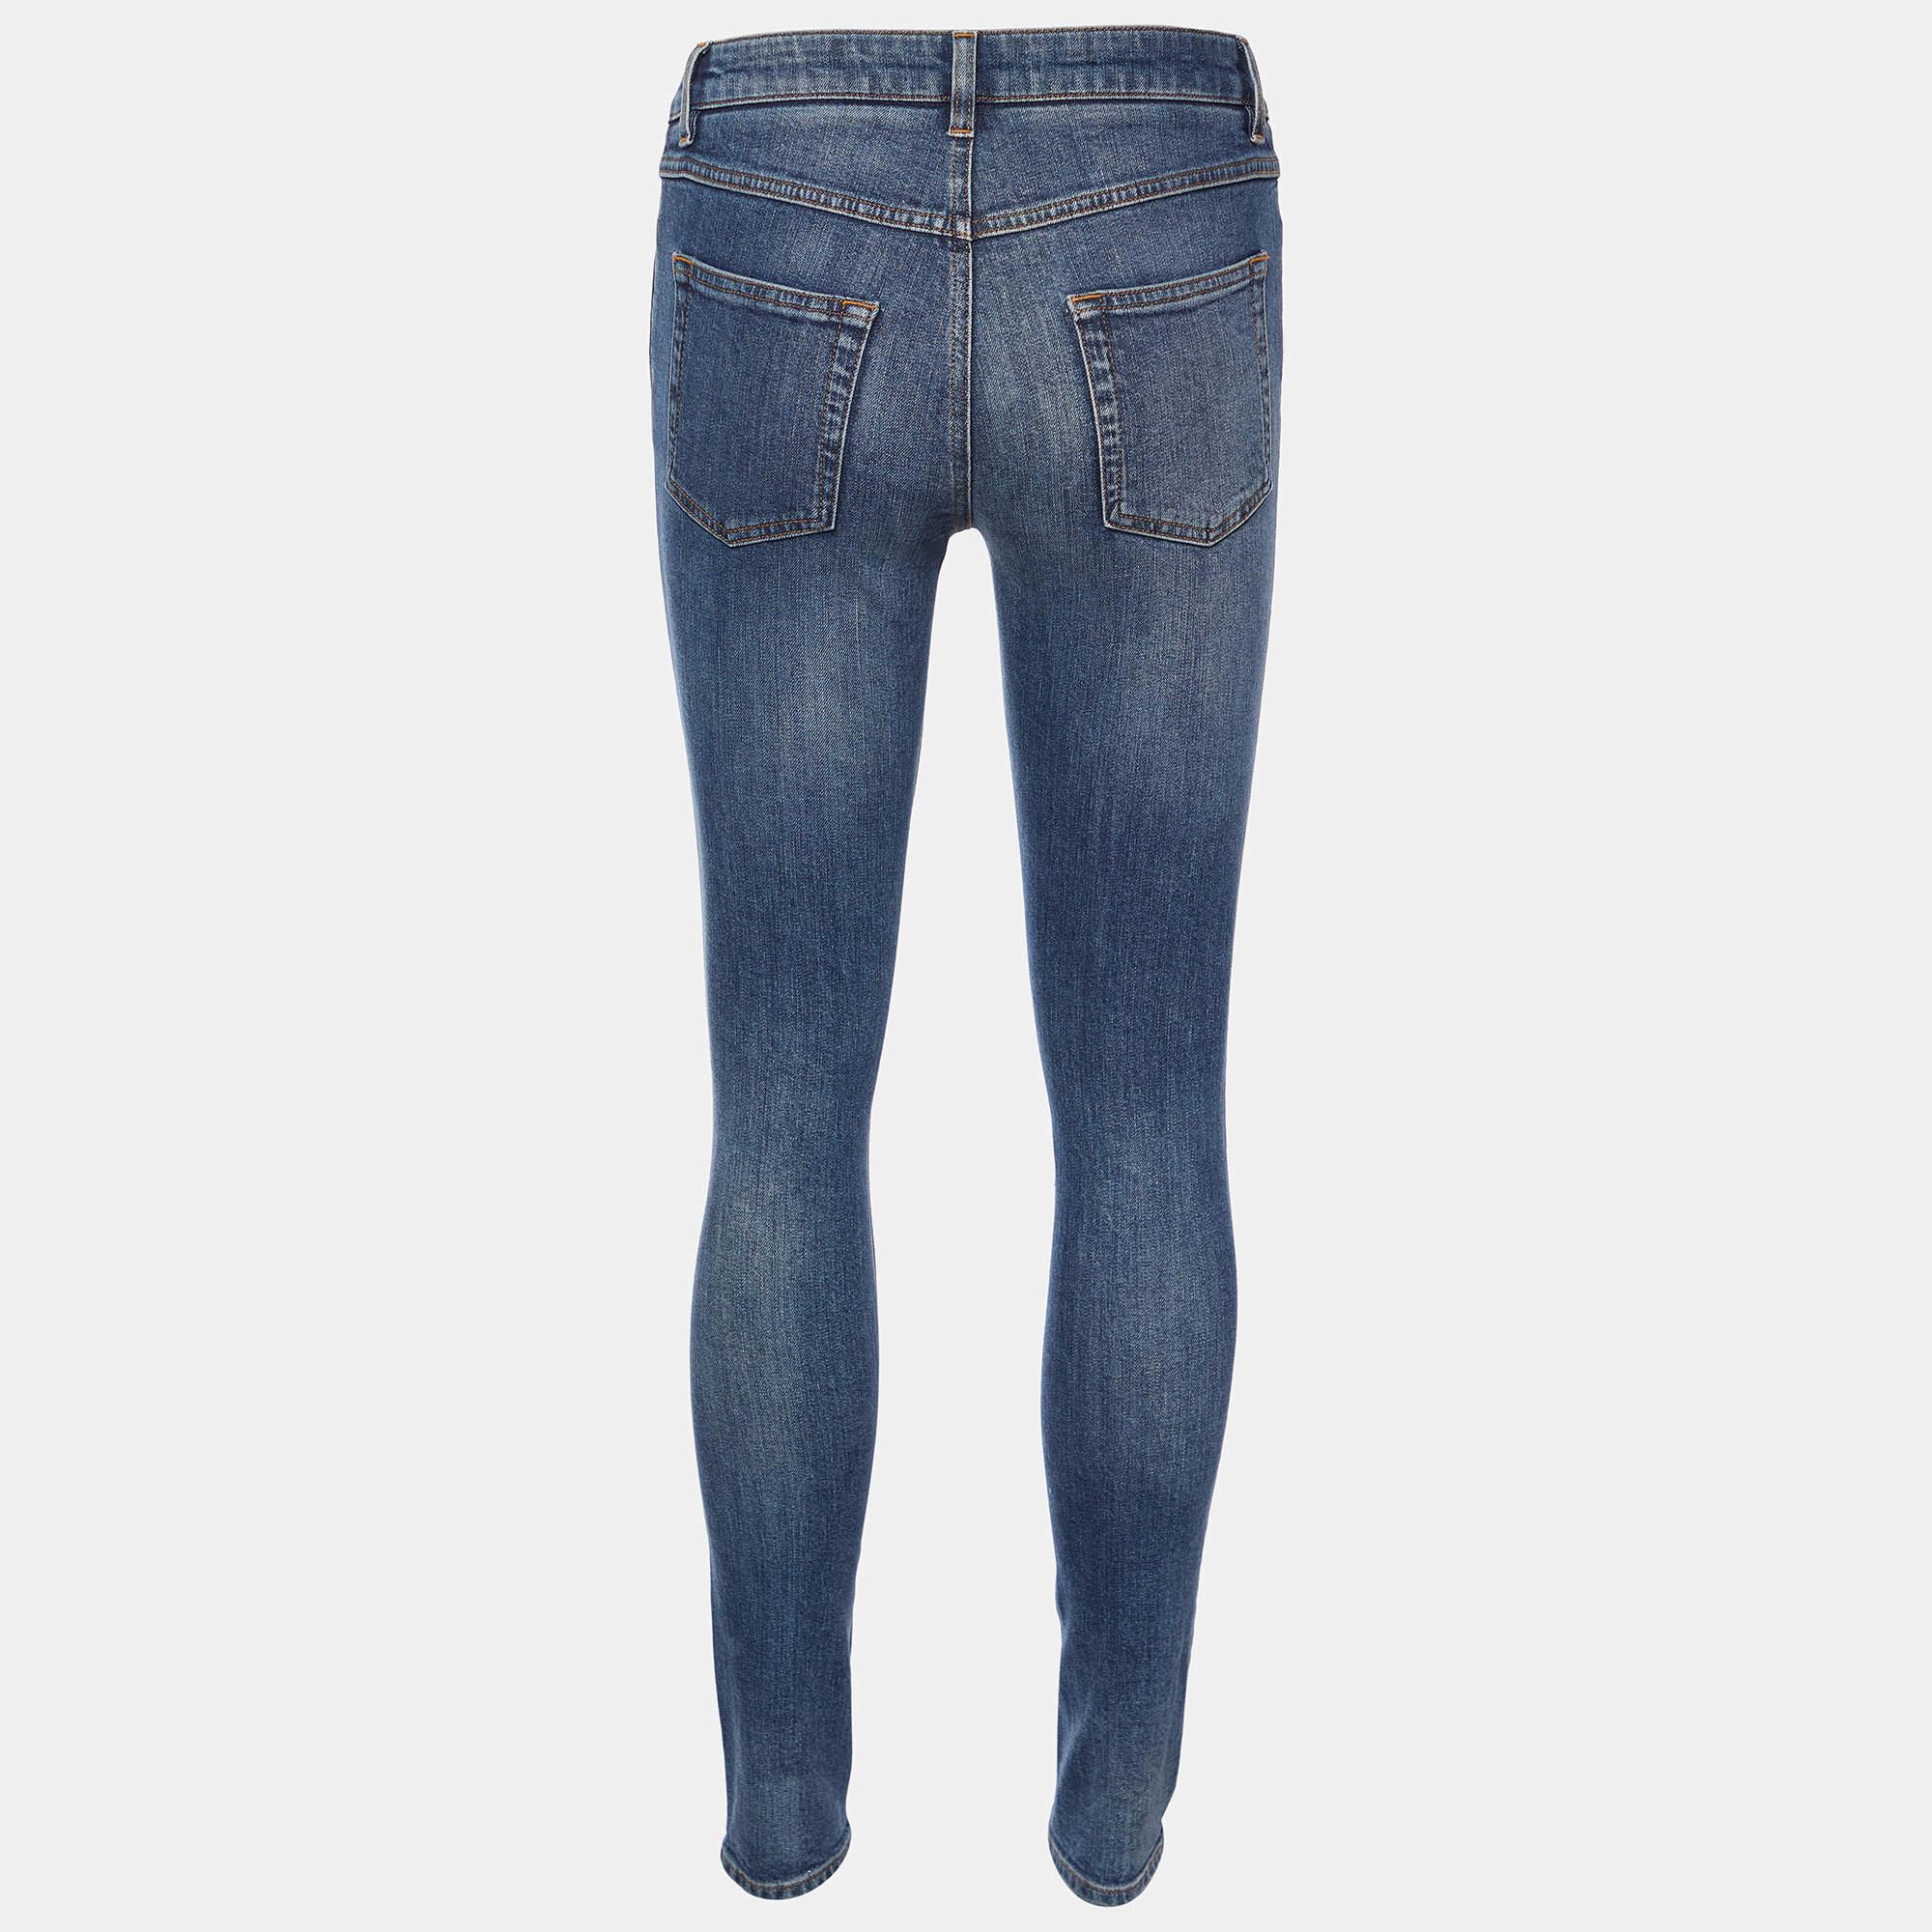 Dolce & Gabbana Blue Denim Pretty Fit Jeans S In Good Condition For Sale In Dubai, Al Qouz 2